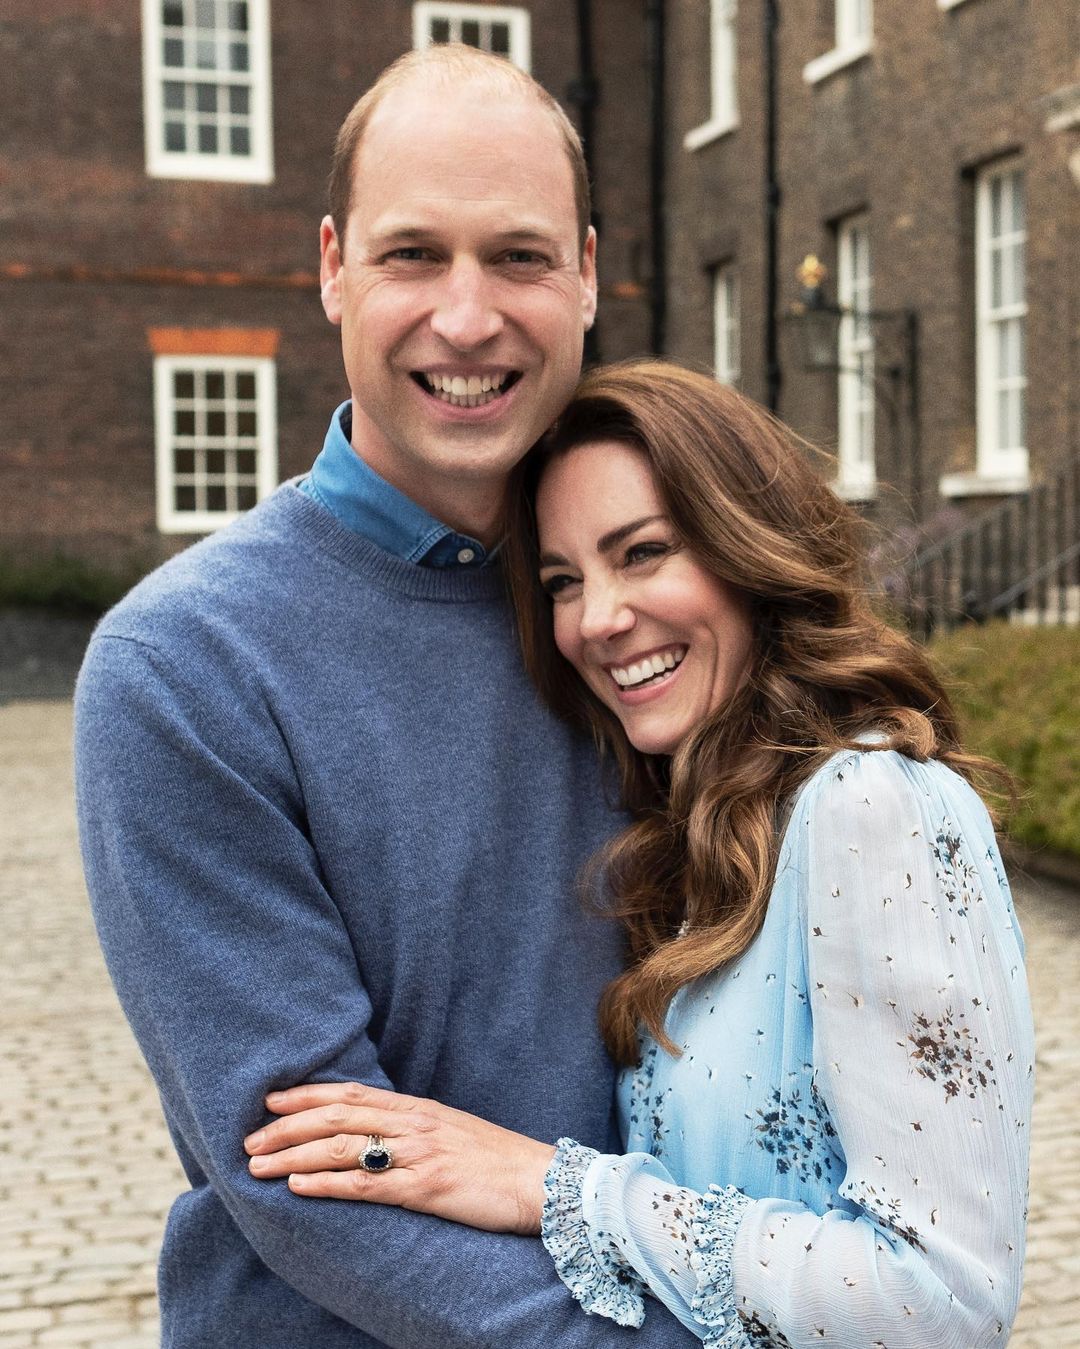 Это любовь: новые фото Кейт Миддлтон и принца Уильяма в честь годовщины свадьбы